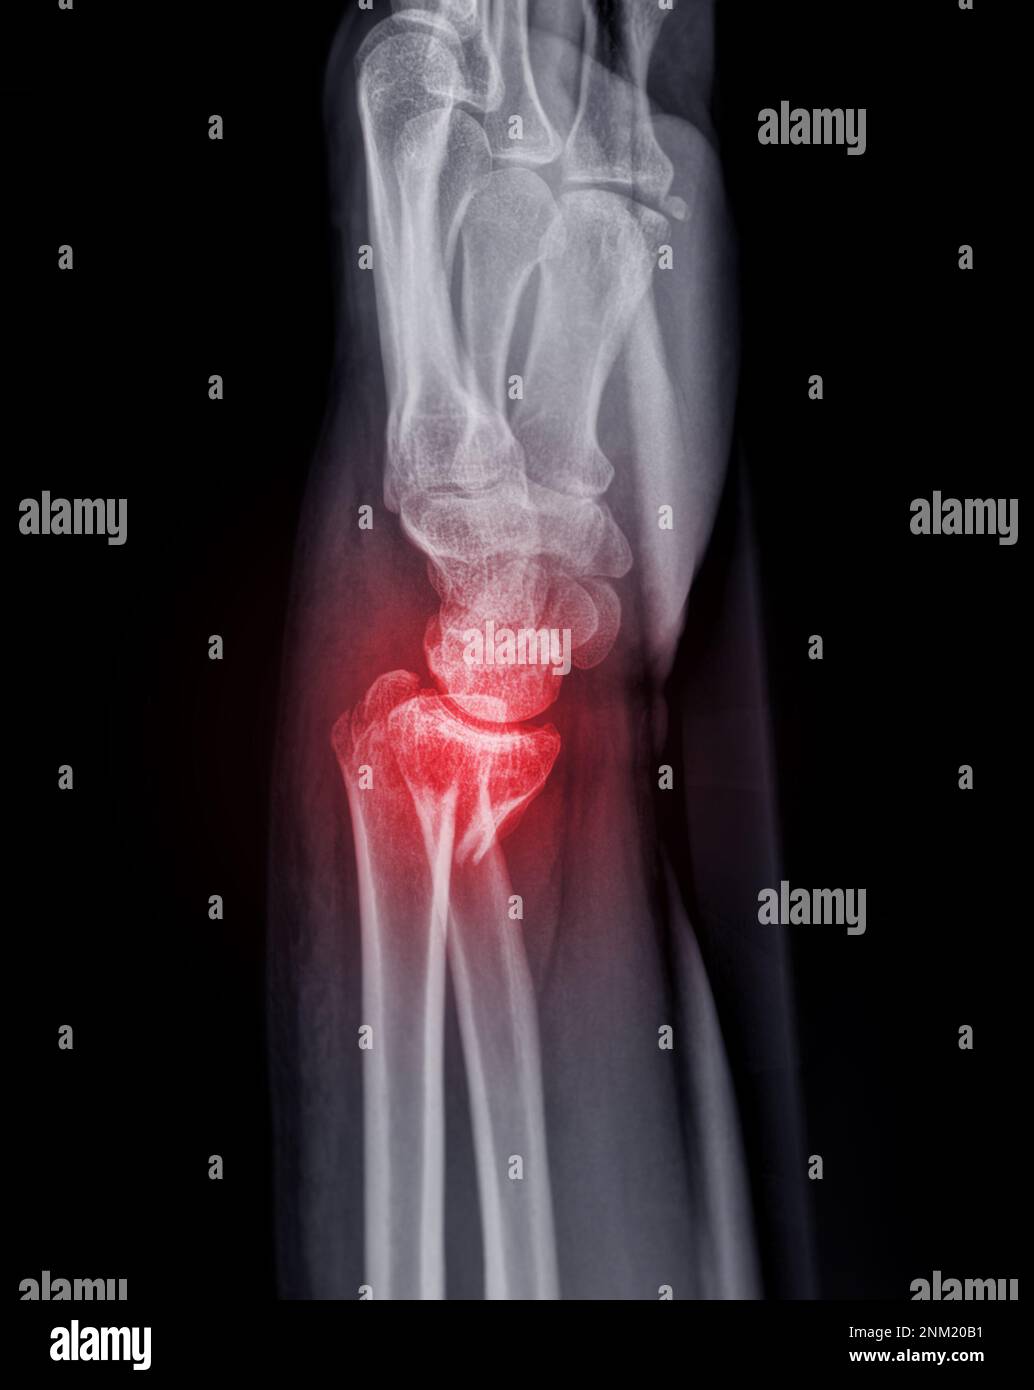 Immagine radiografica dell'articolazione del polso sinistro AP e vista laterale per la visualizzazione della frattura dell'osso radiale. Foto Stock